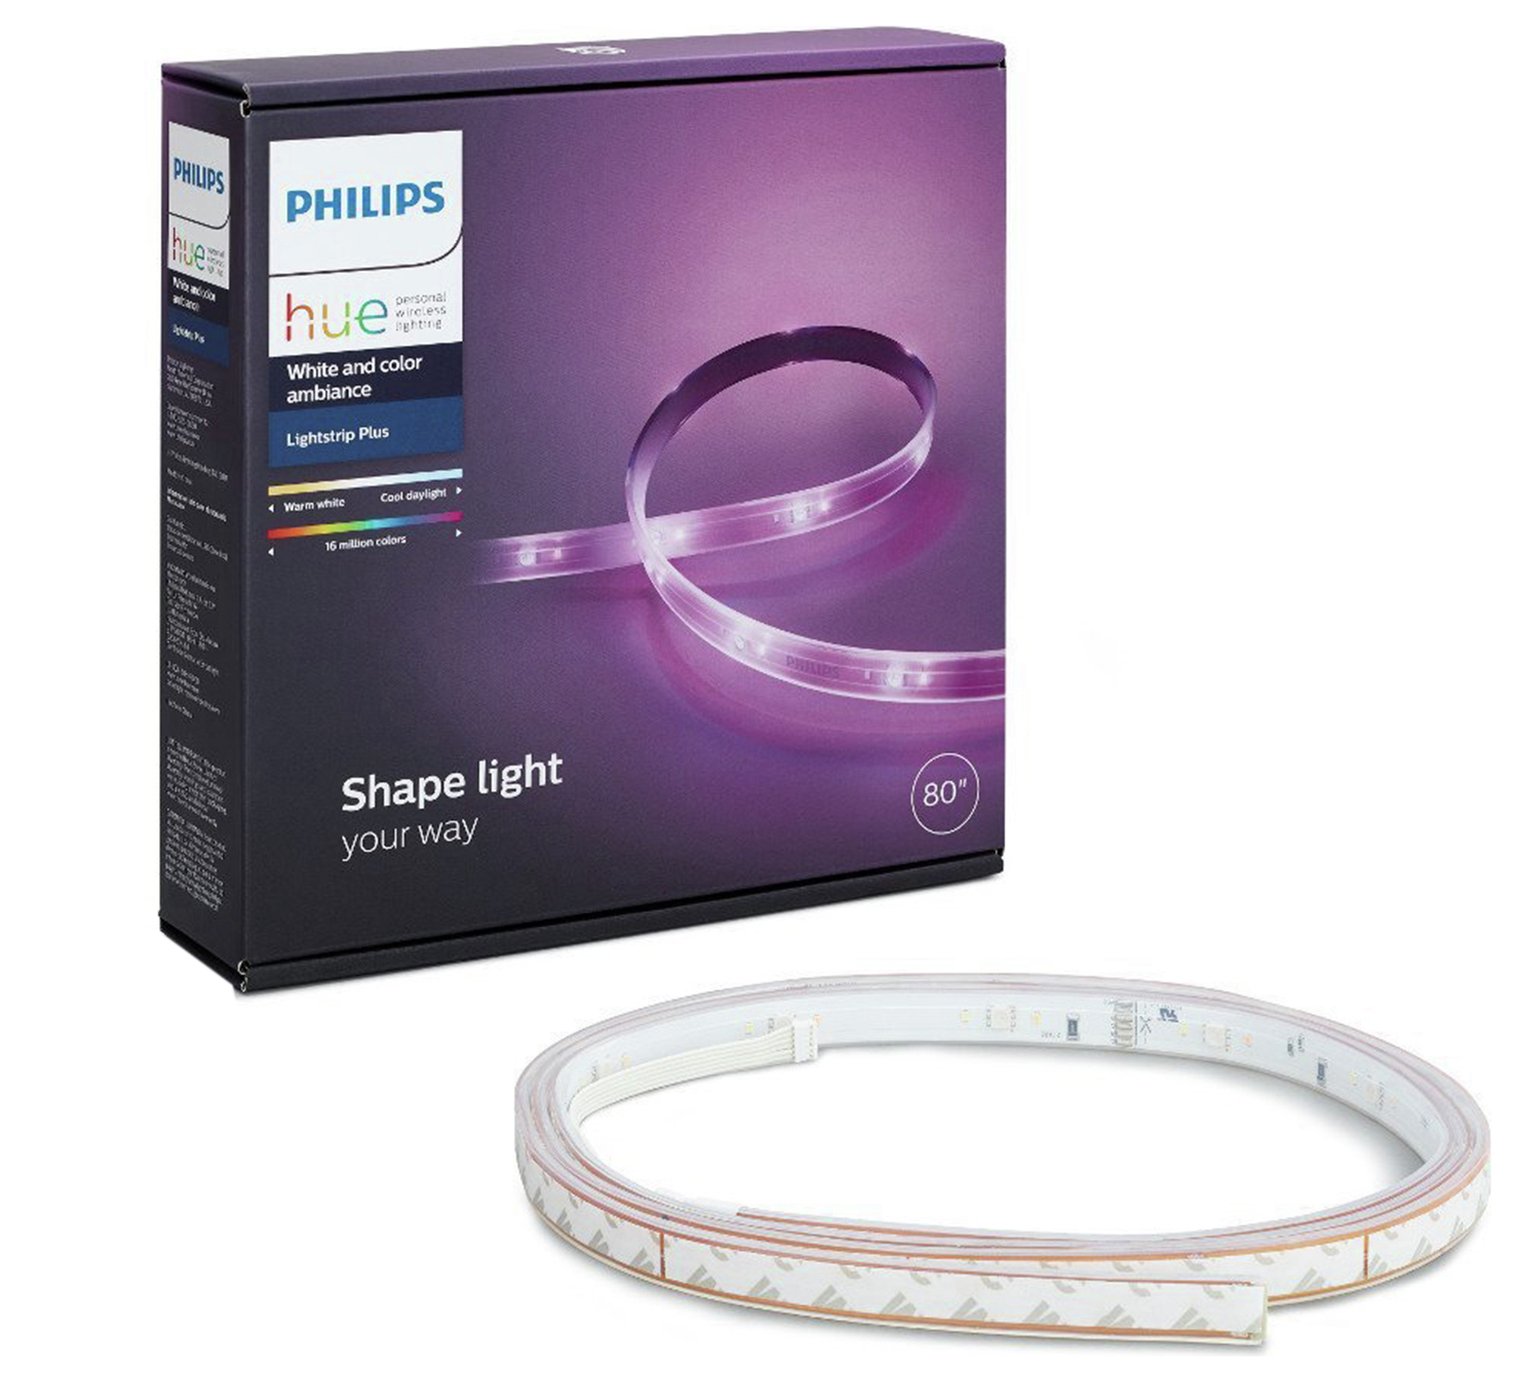 Philips Hue 20W LED Lightstrip Plus 2m  Light Strips Kit